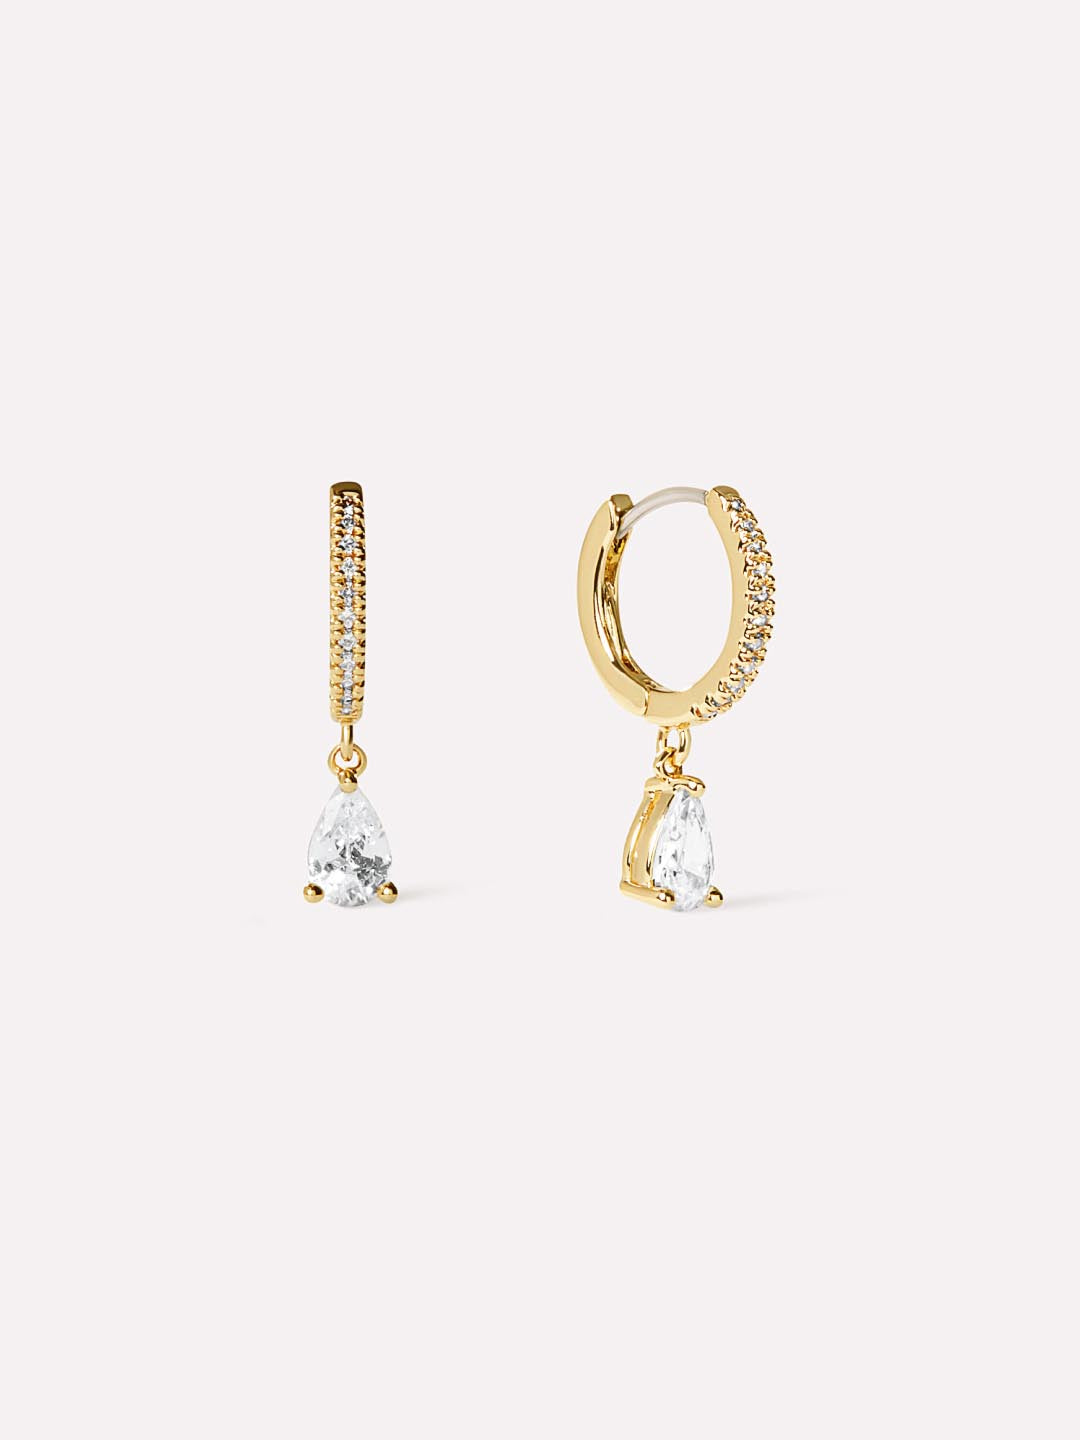 Delicate Solitaire Pendant - Elise Pendant | Ana Luisa Jewelry